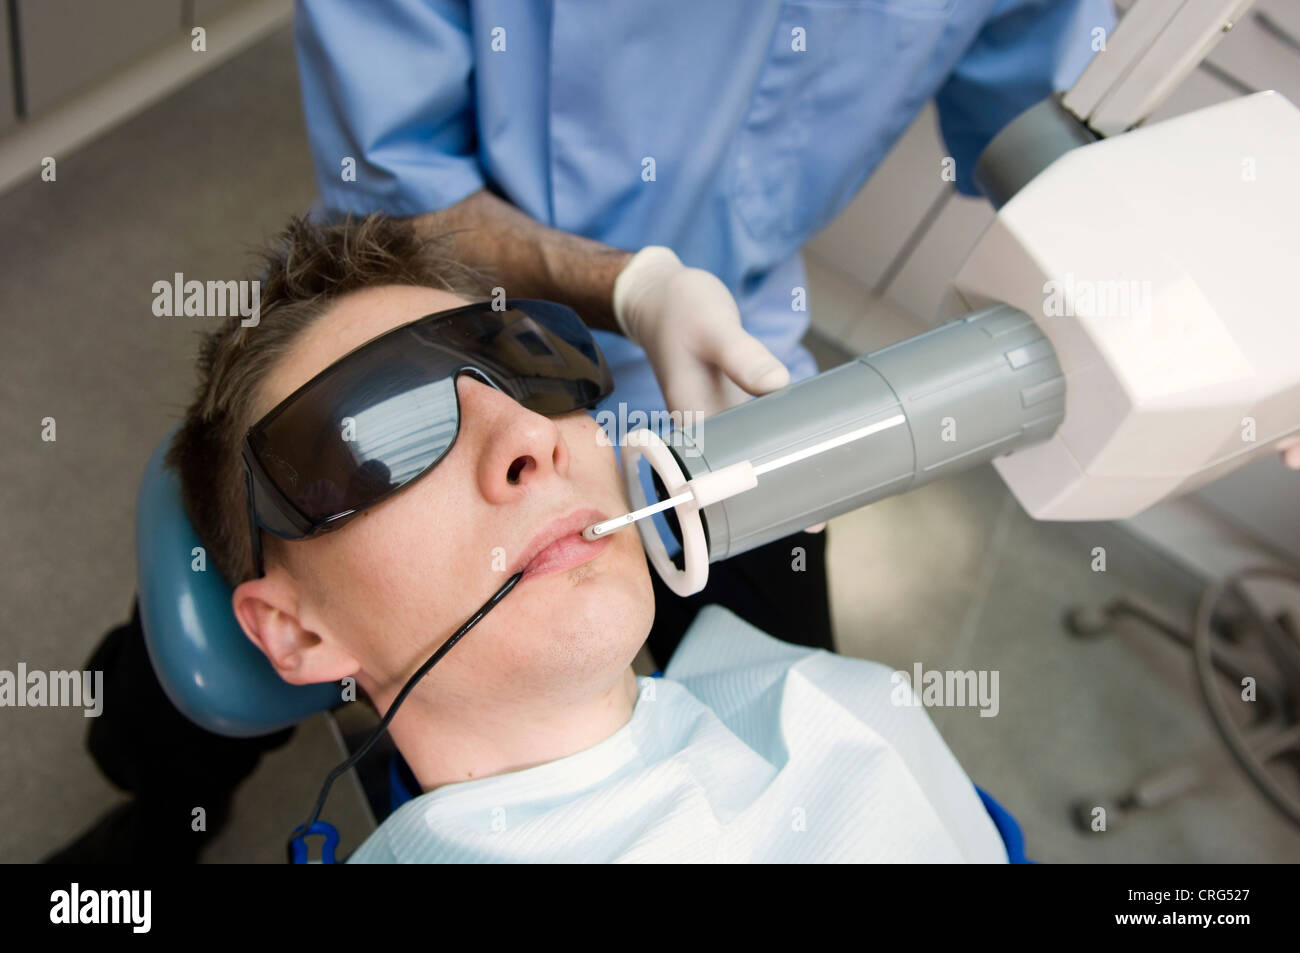 Dentista el uso de las gafas de seguridad y mascarilla de boca los rayos x de los dientes del paciente joven, también llevaba gafas de protección especial Foto de stock